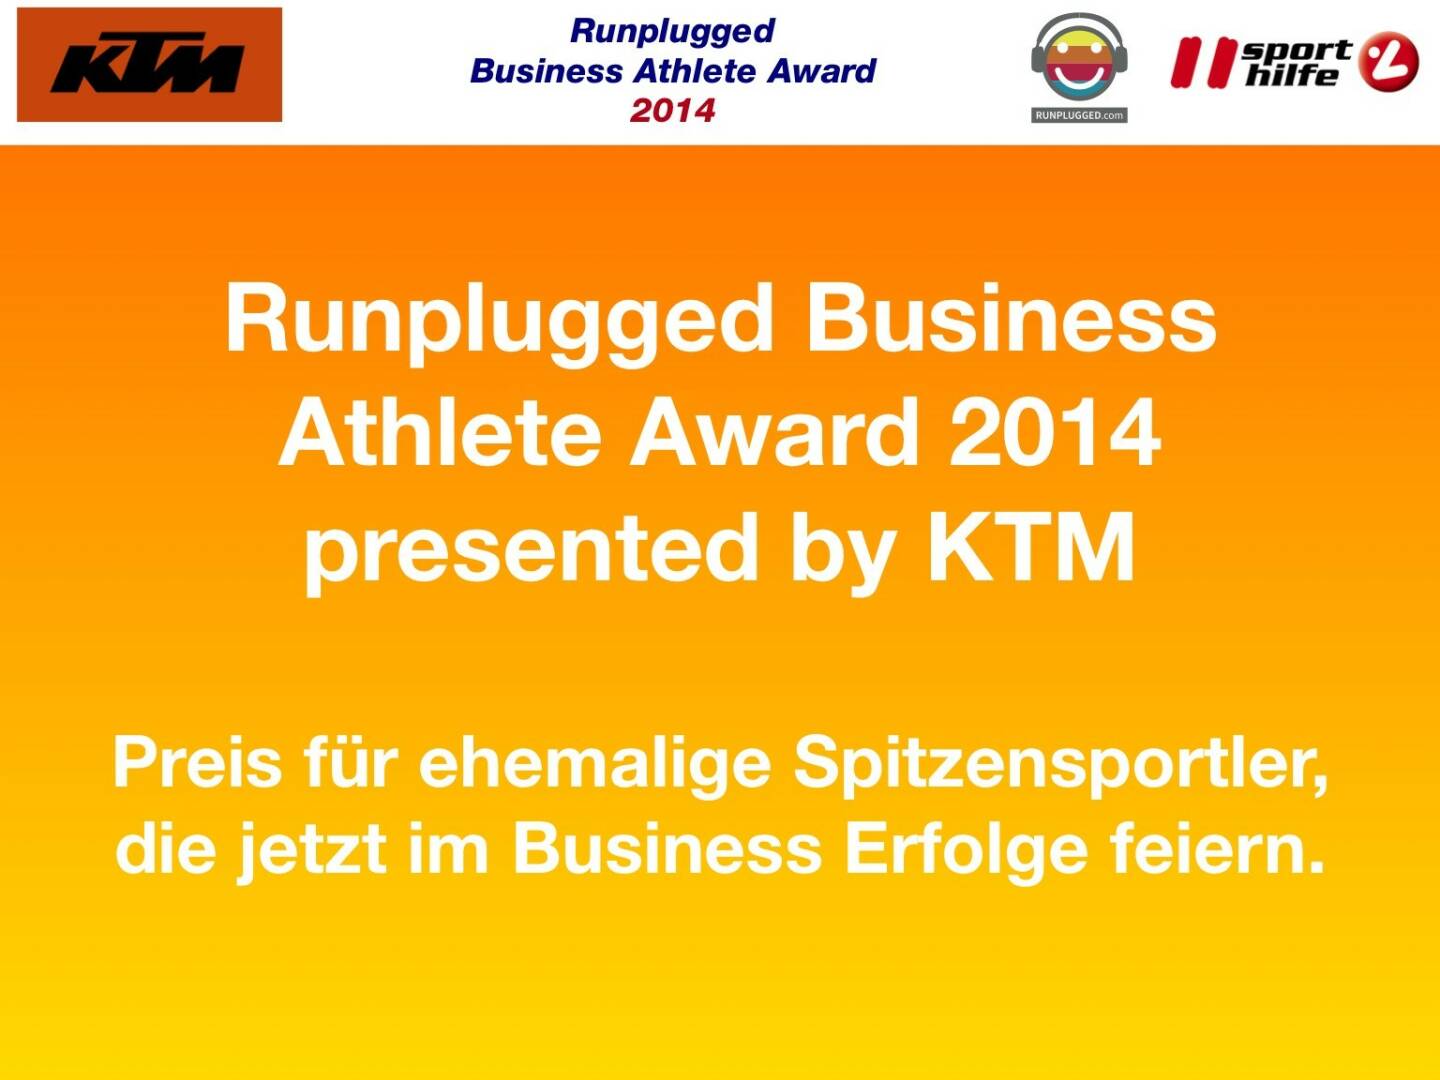 Runplugged Business Athlete Award 2014 presented by KTM Preis für ehemalige Spitzensportler, die jetzt im Business Erfolge feiern.